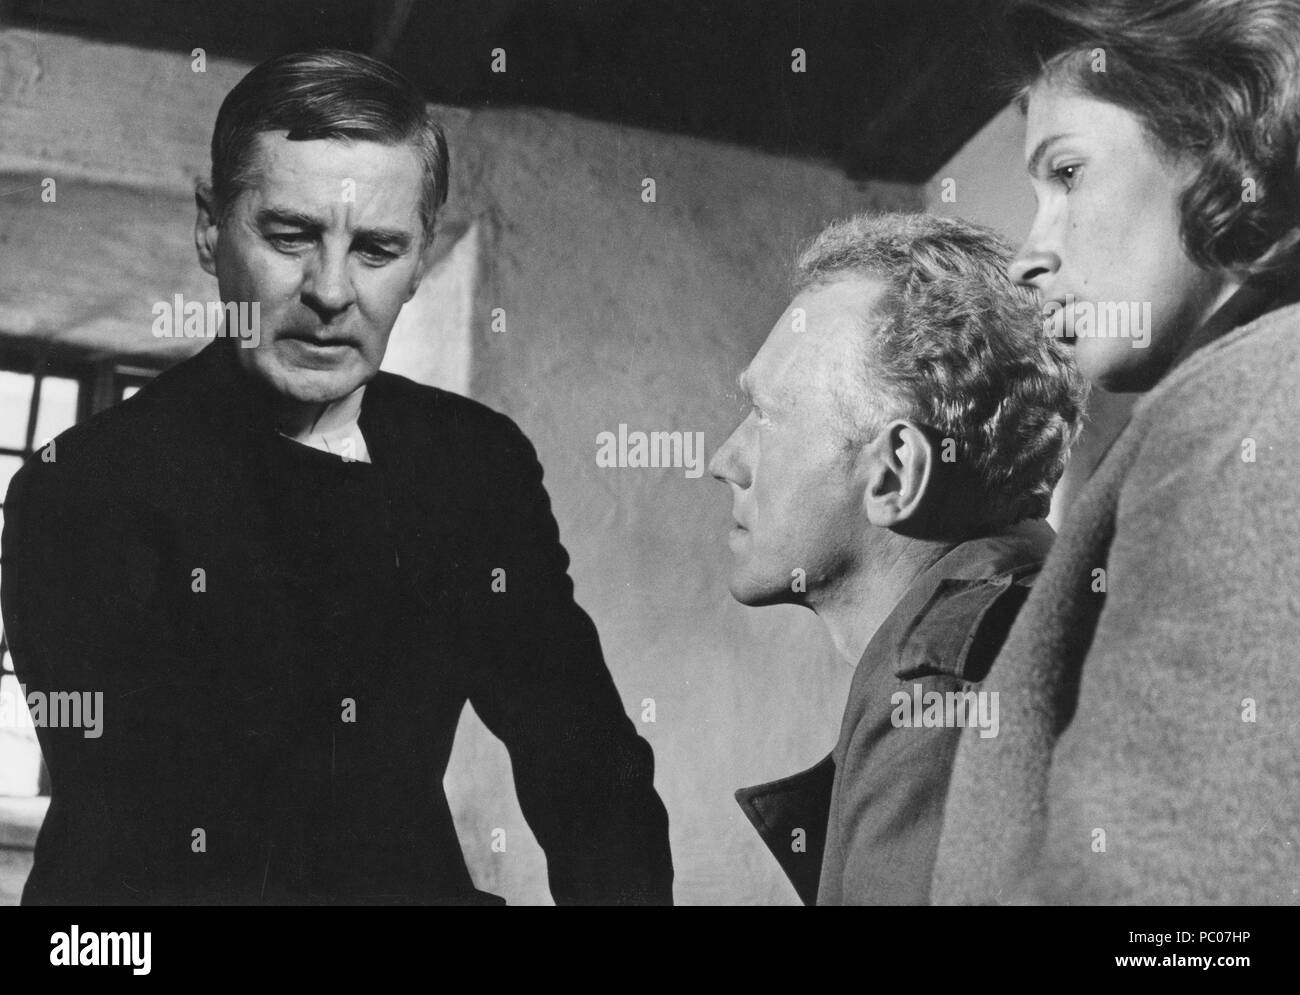 Lumière d'hiver. Film Suédois d'Ingmar Bergman de 1963 avec Max von Sydow et Gunnar Björnstrand et Gunnel Lindblom. Ingmar Bergman. 1918-2007. Directeur du cinéma suédois. Banque D'Images